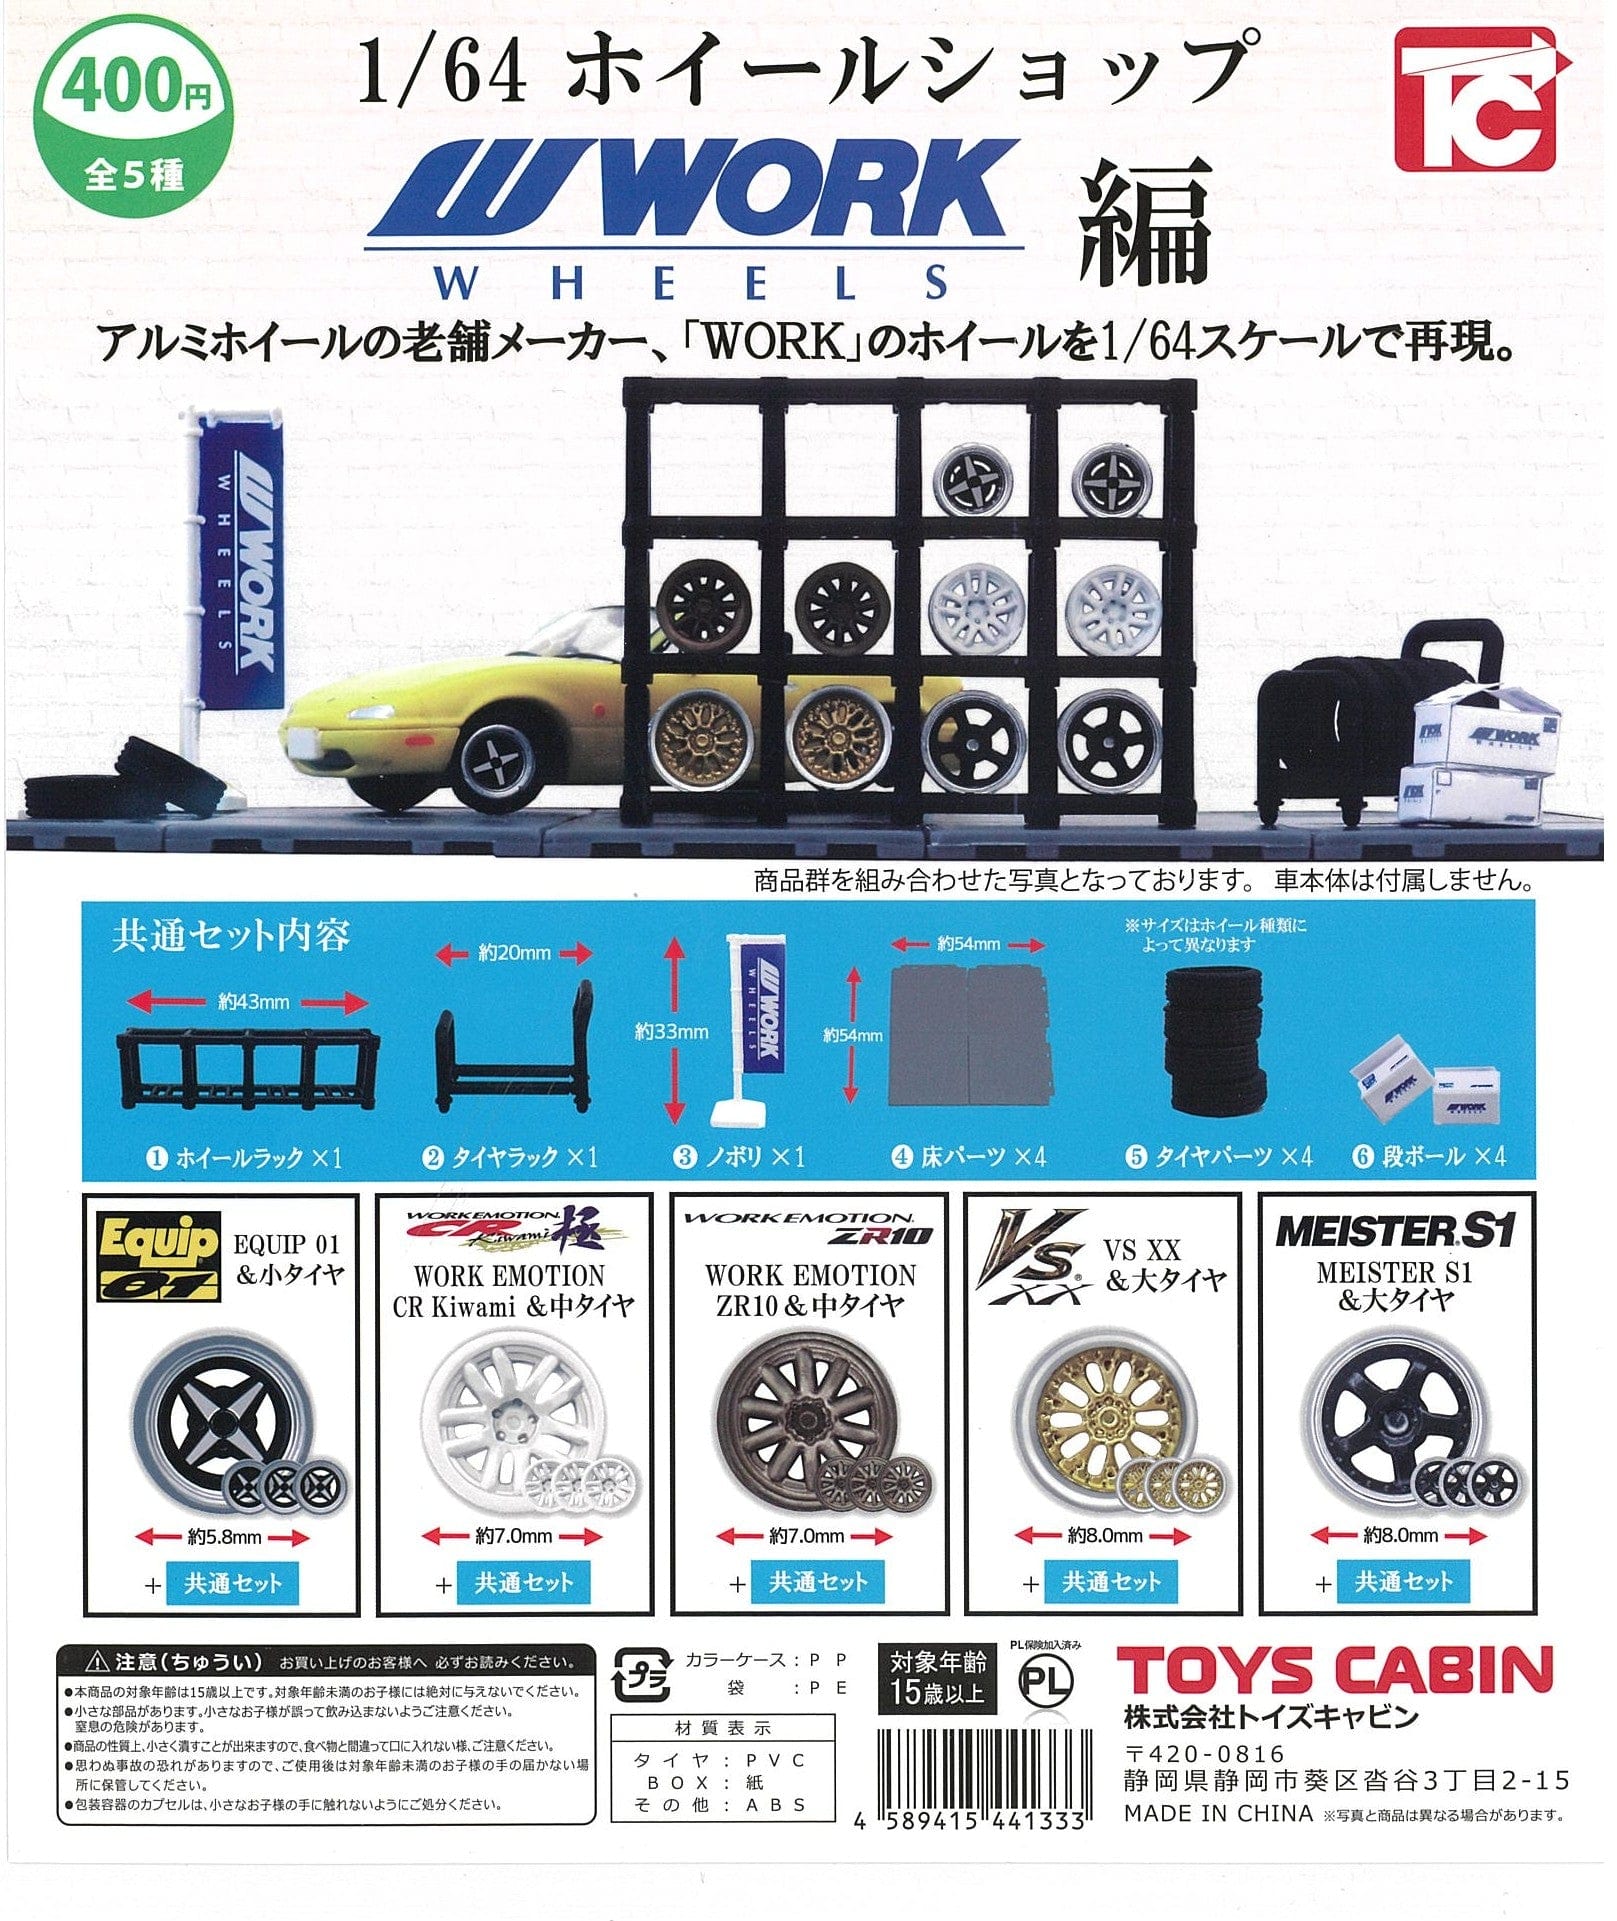 Toys Cabin CP2425 1/64 Wheel Shop WORK Ver